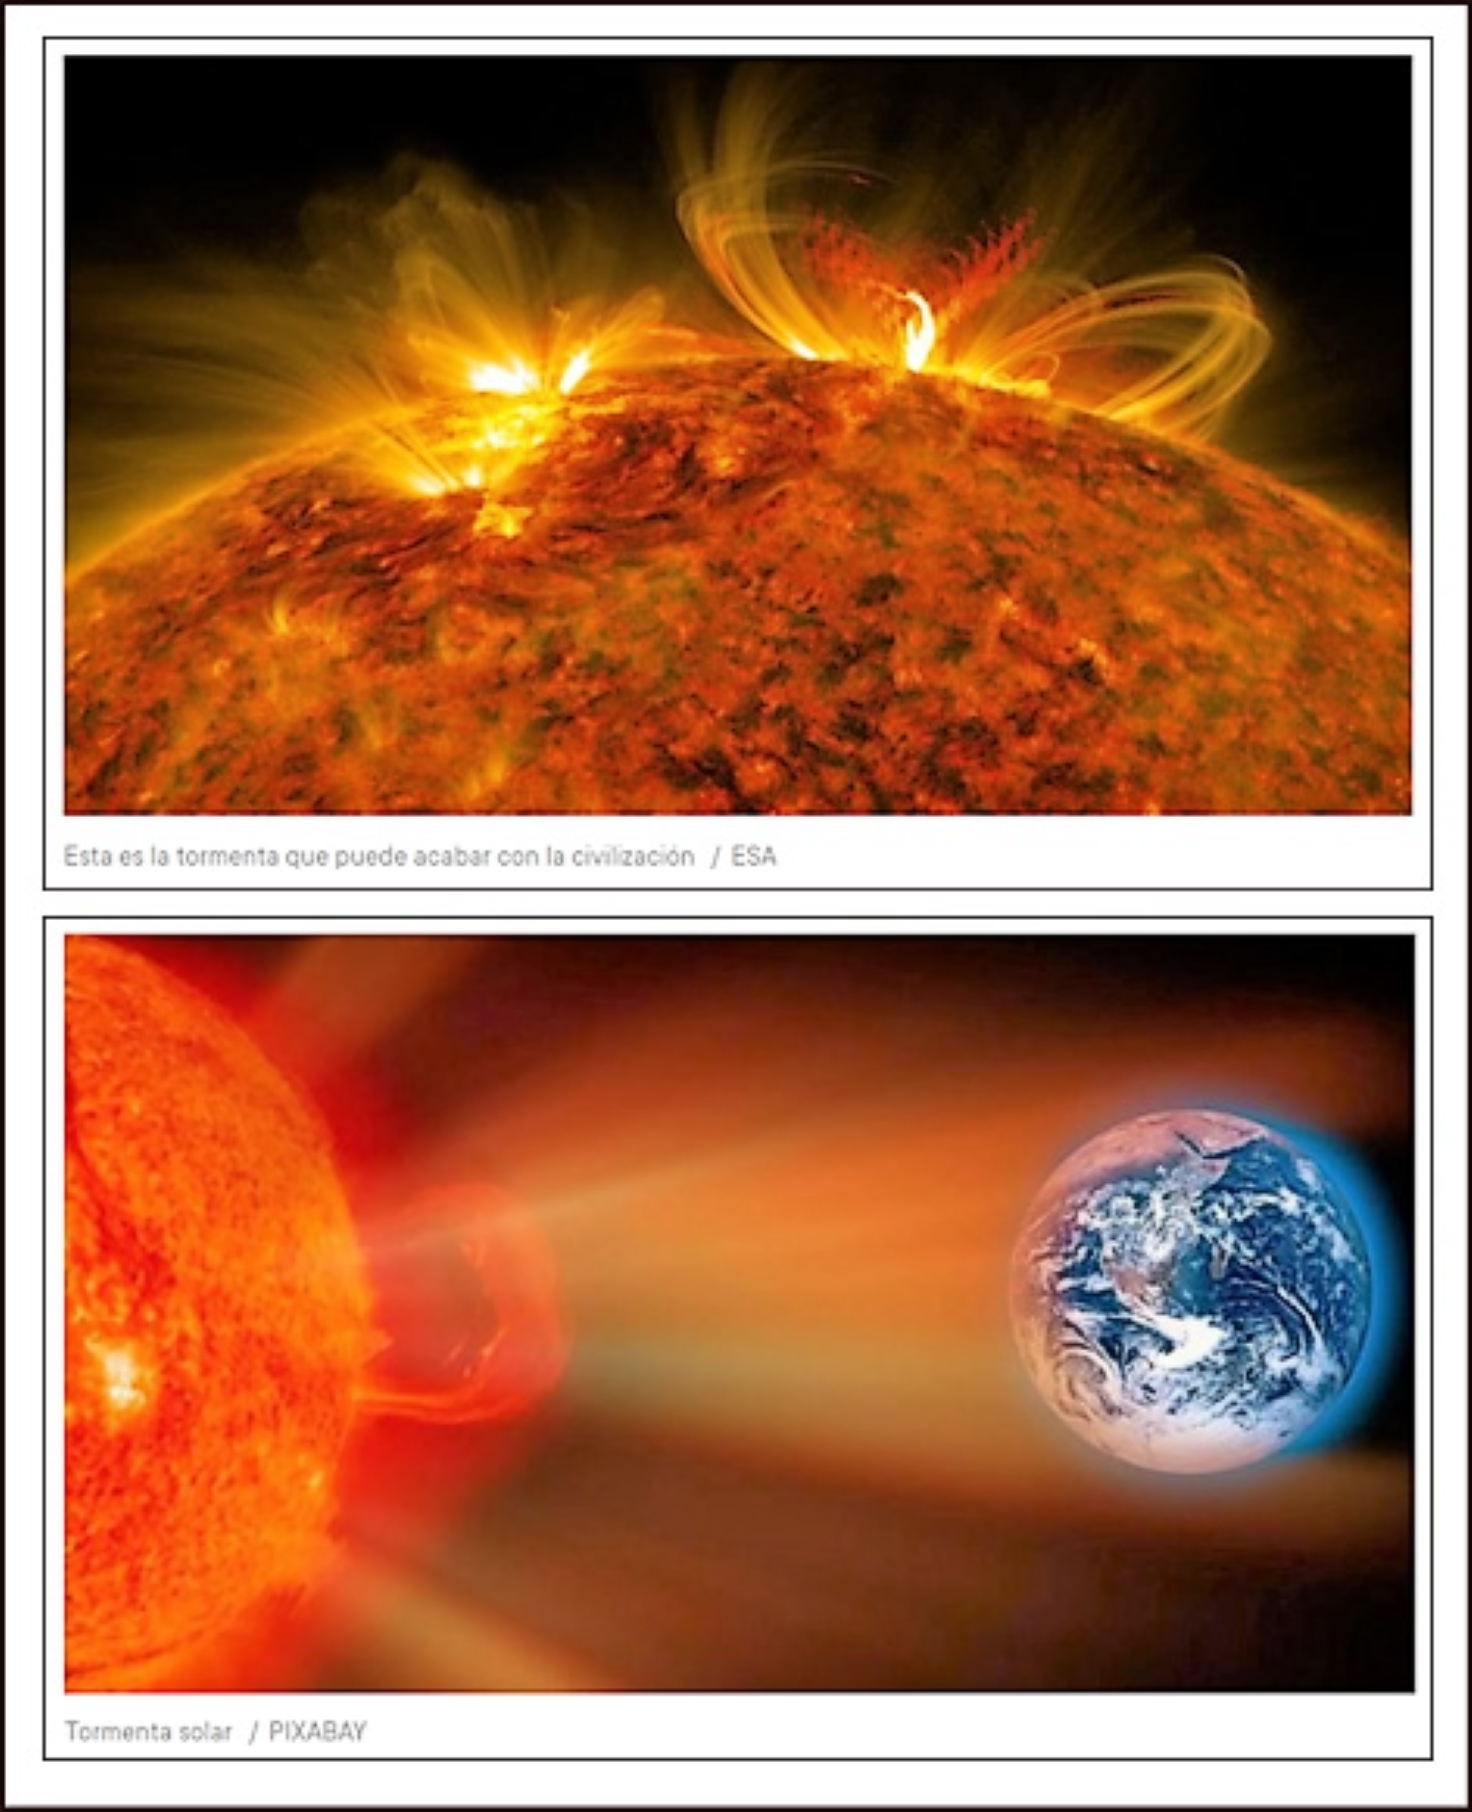 En el verano d 2012 la Tierra evitó una enorme llamarada solar d efectos tremendamente catastróficos